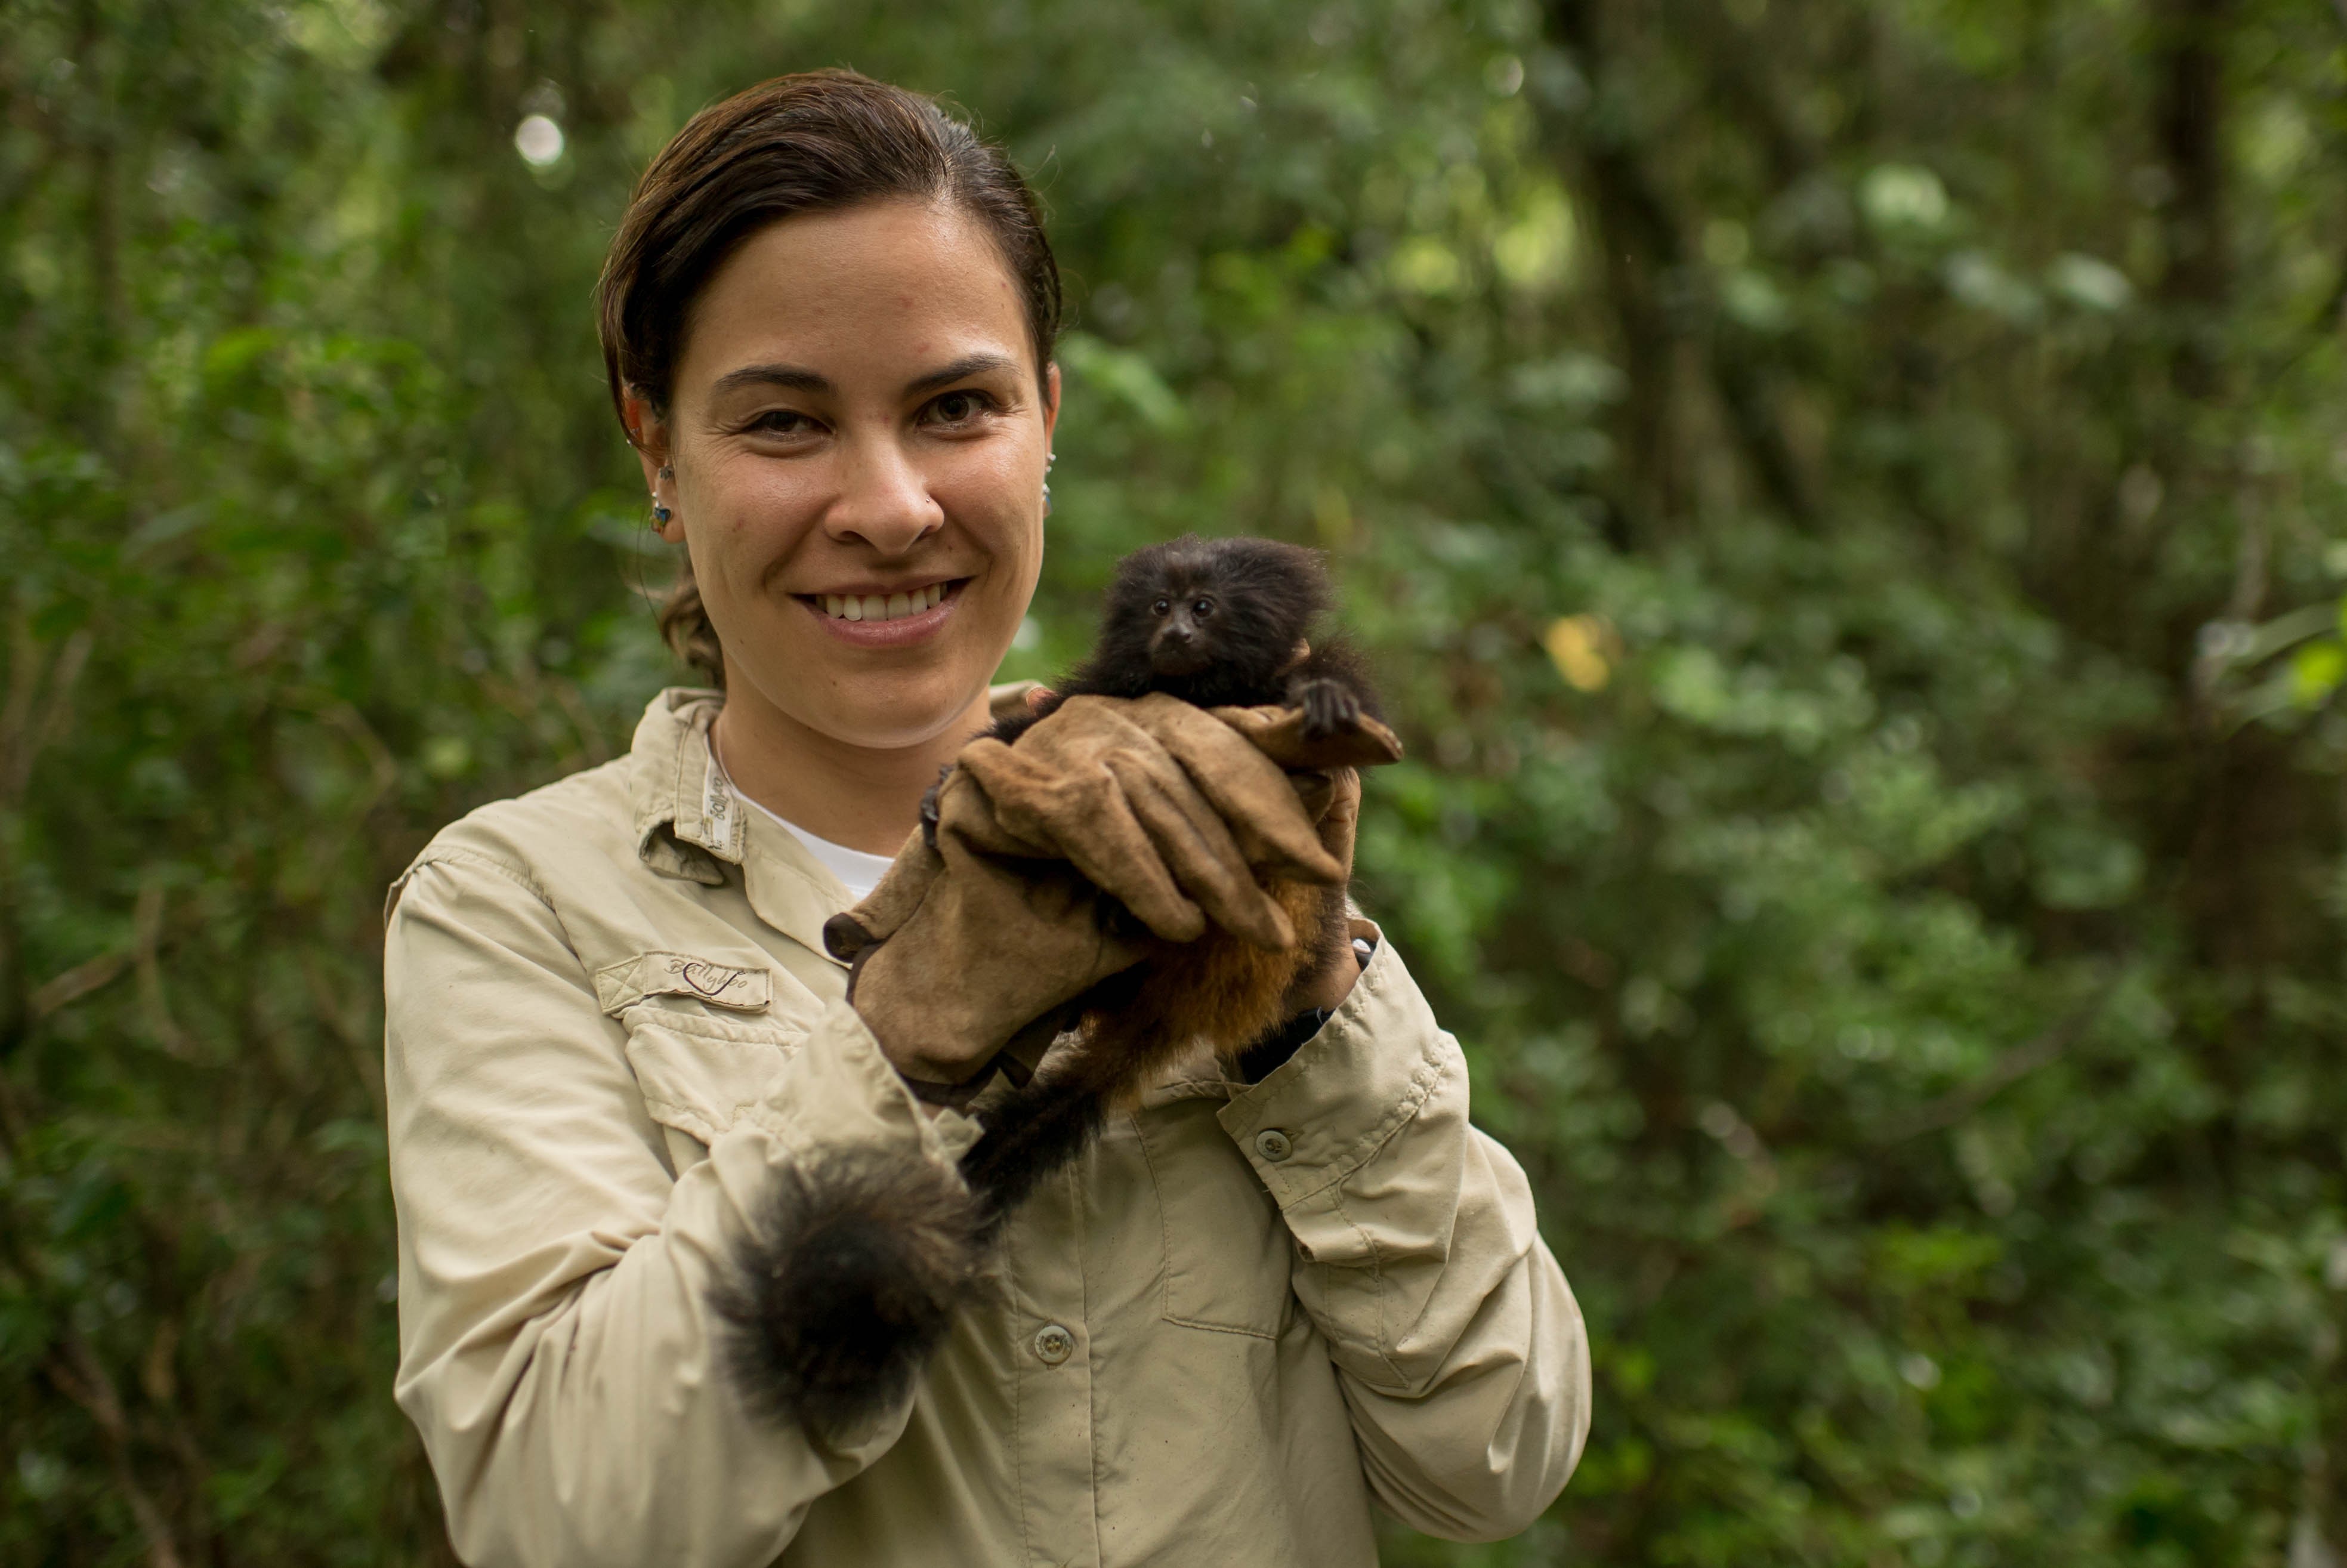 Gabriela Rezende coordena o Programa de Conservação do Mico-leão-preto, iniciativa do Instituto de Pesquisas Ecológicas (IPÊ) (Foto: Reprodução/IPÊ)